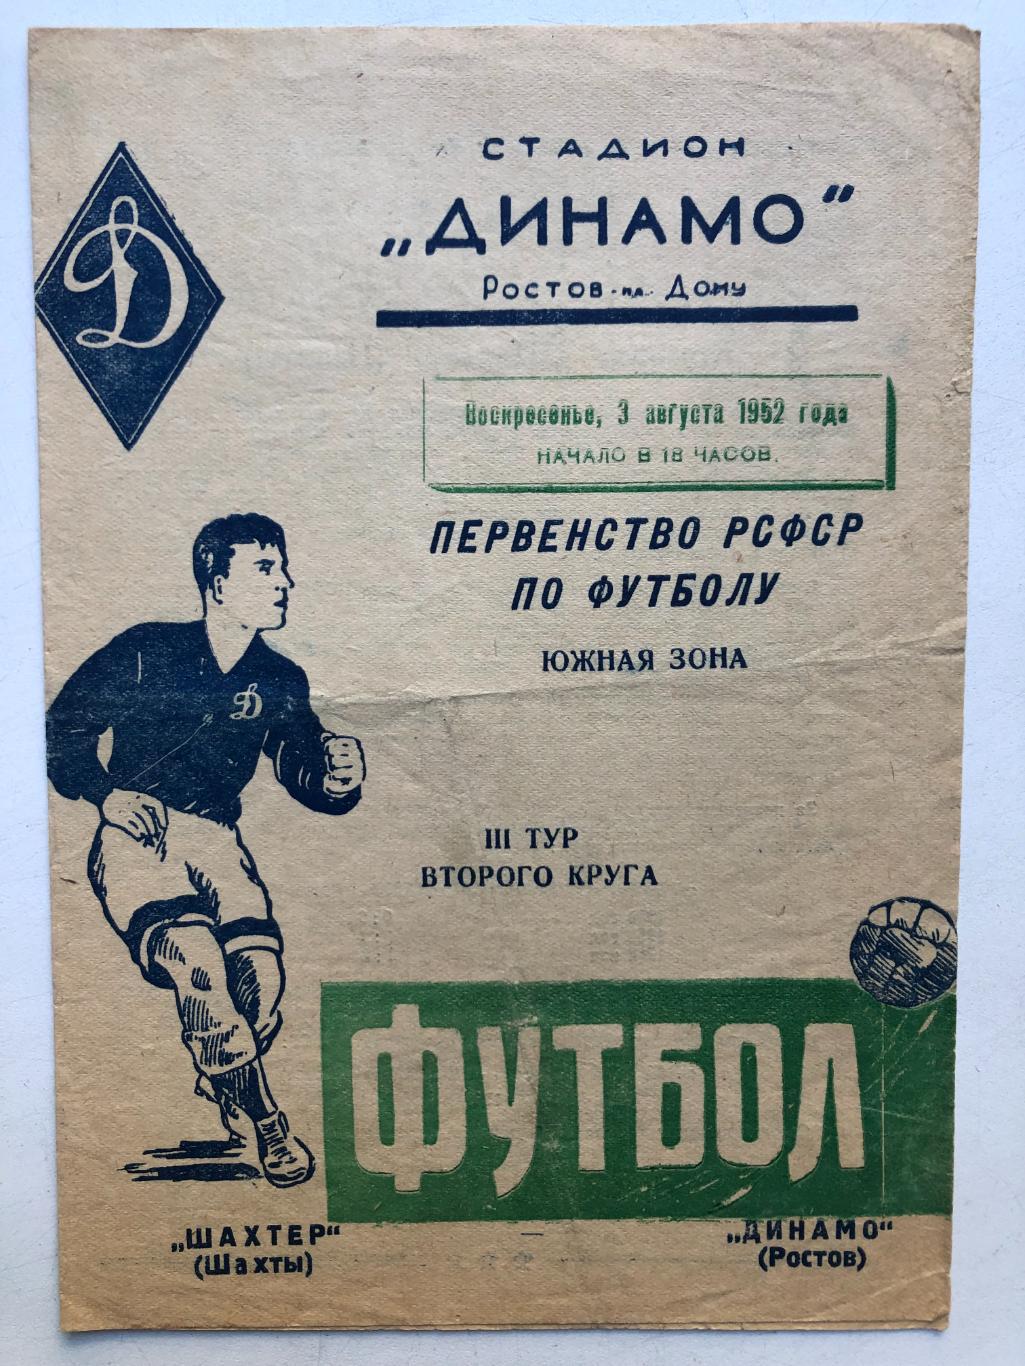 Динамо Ростов - Шахтер Шахты 3.08.1952